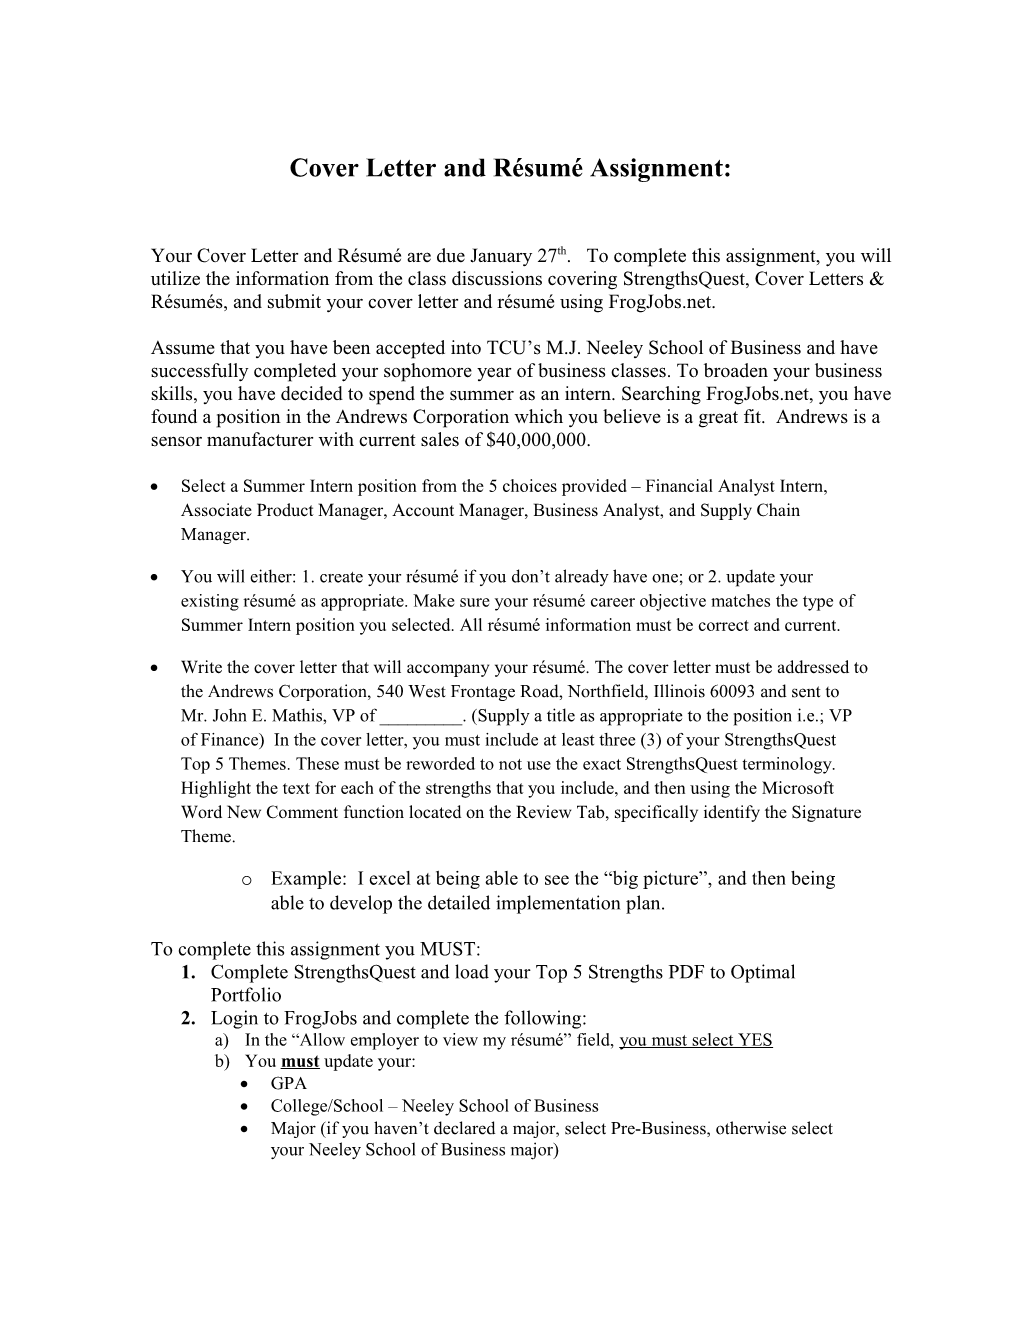 Cover Letter and Résumé Assignment s1